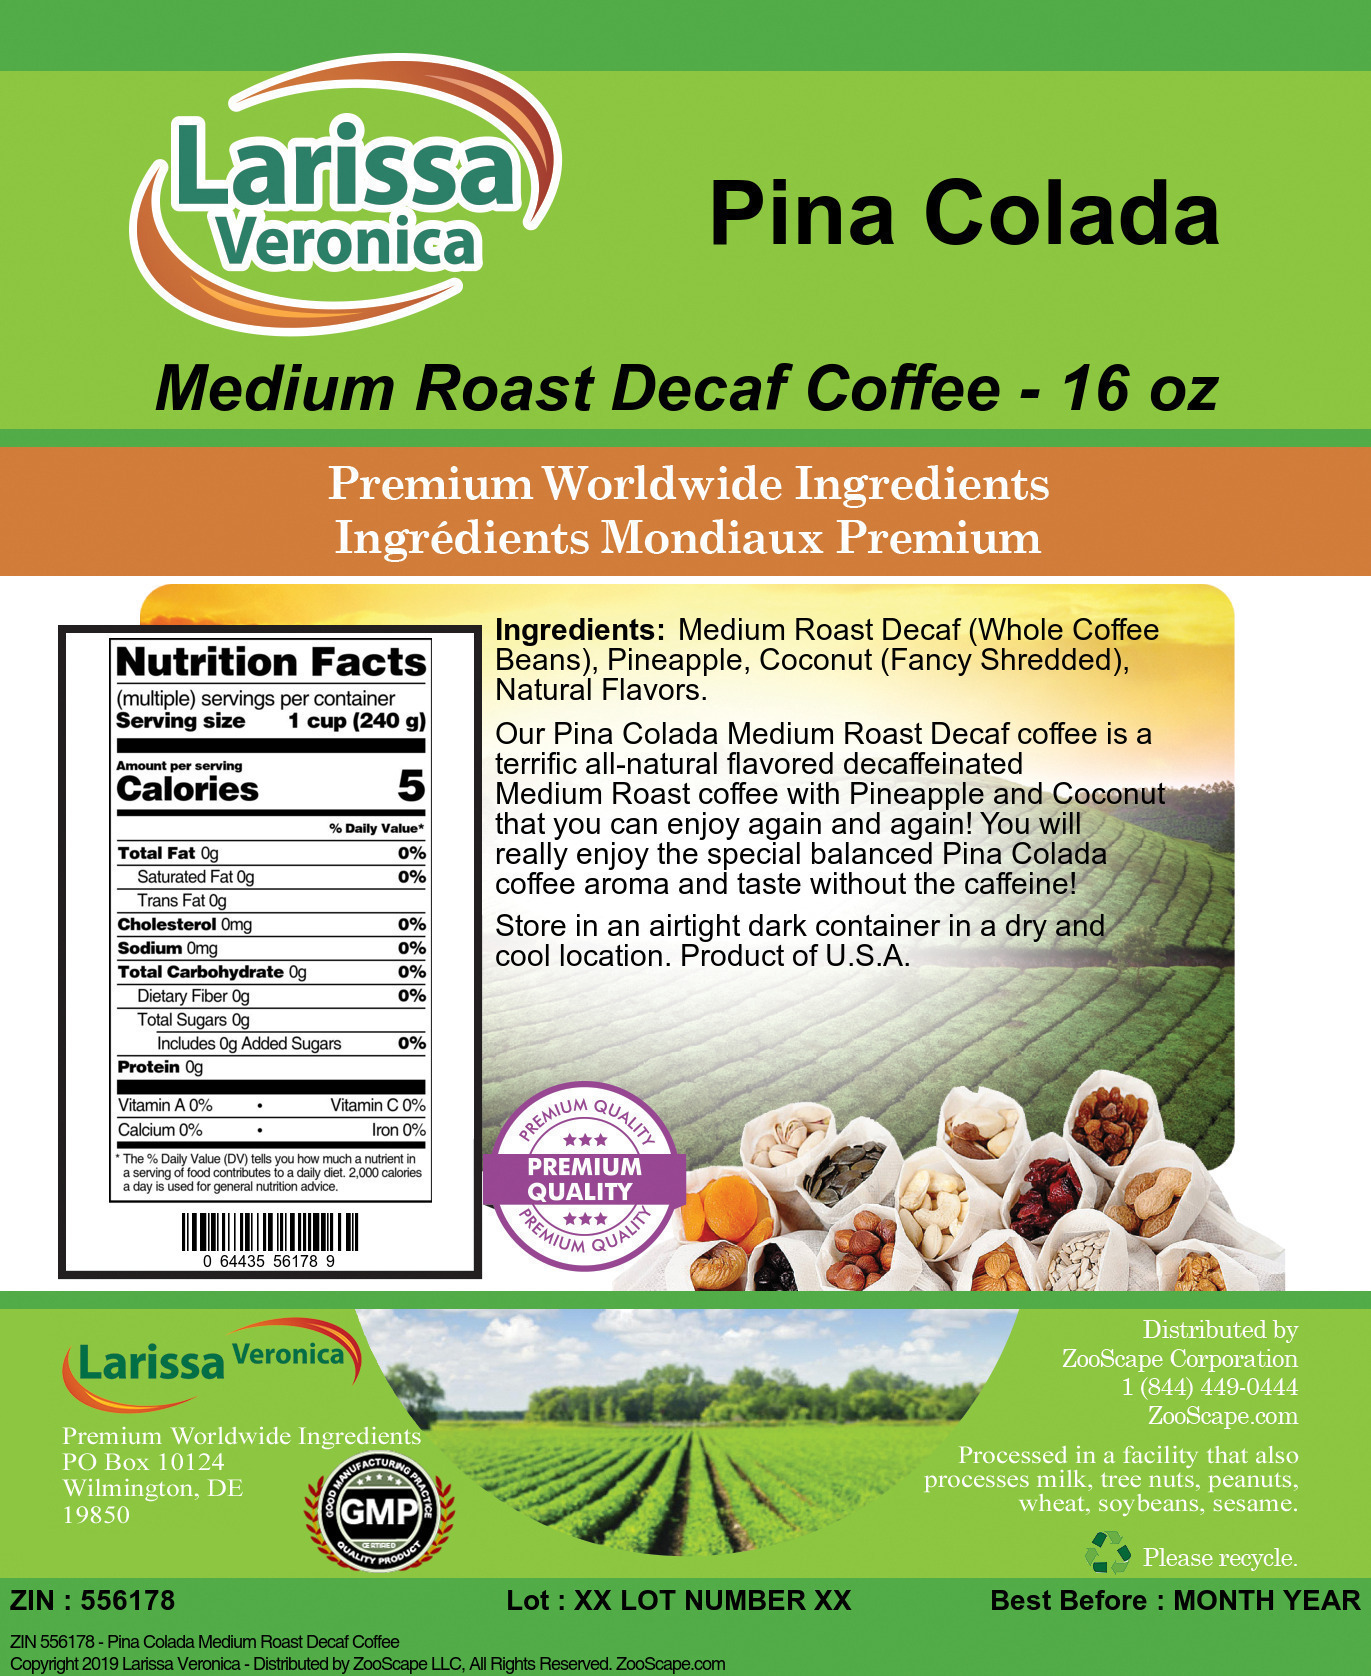 Pina Colada Medium Roast Decaf Coffee - Label